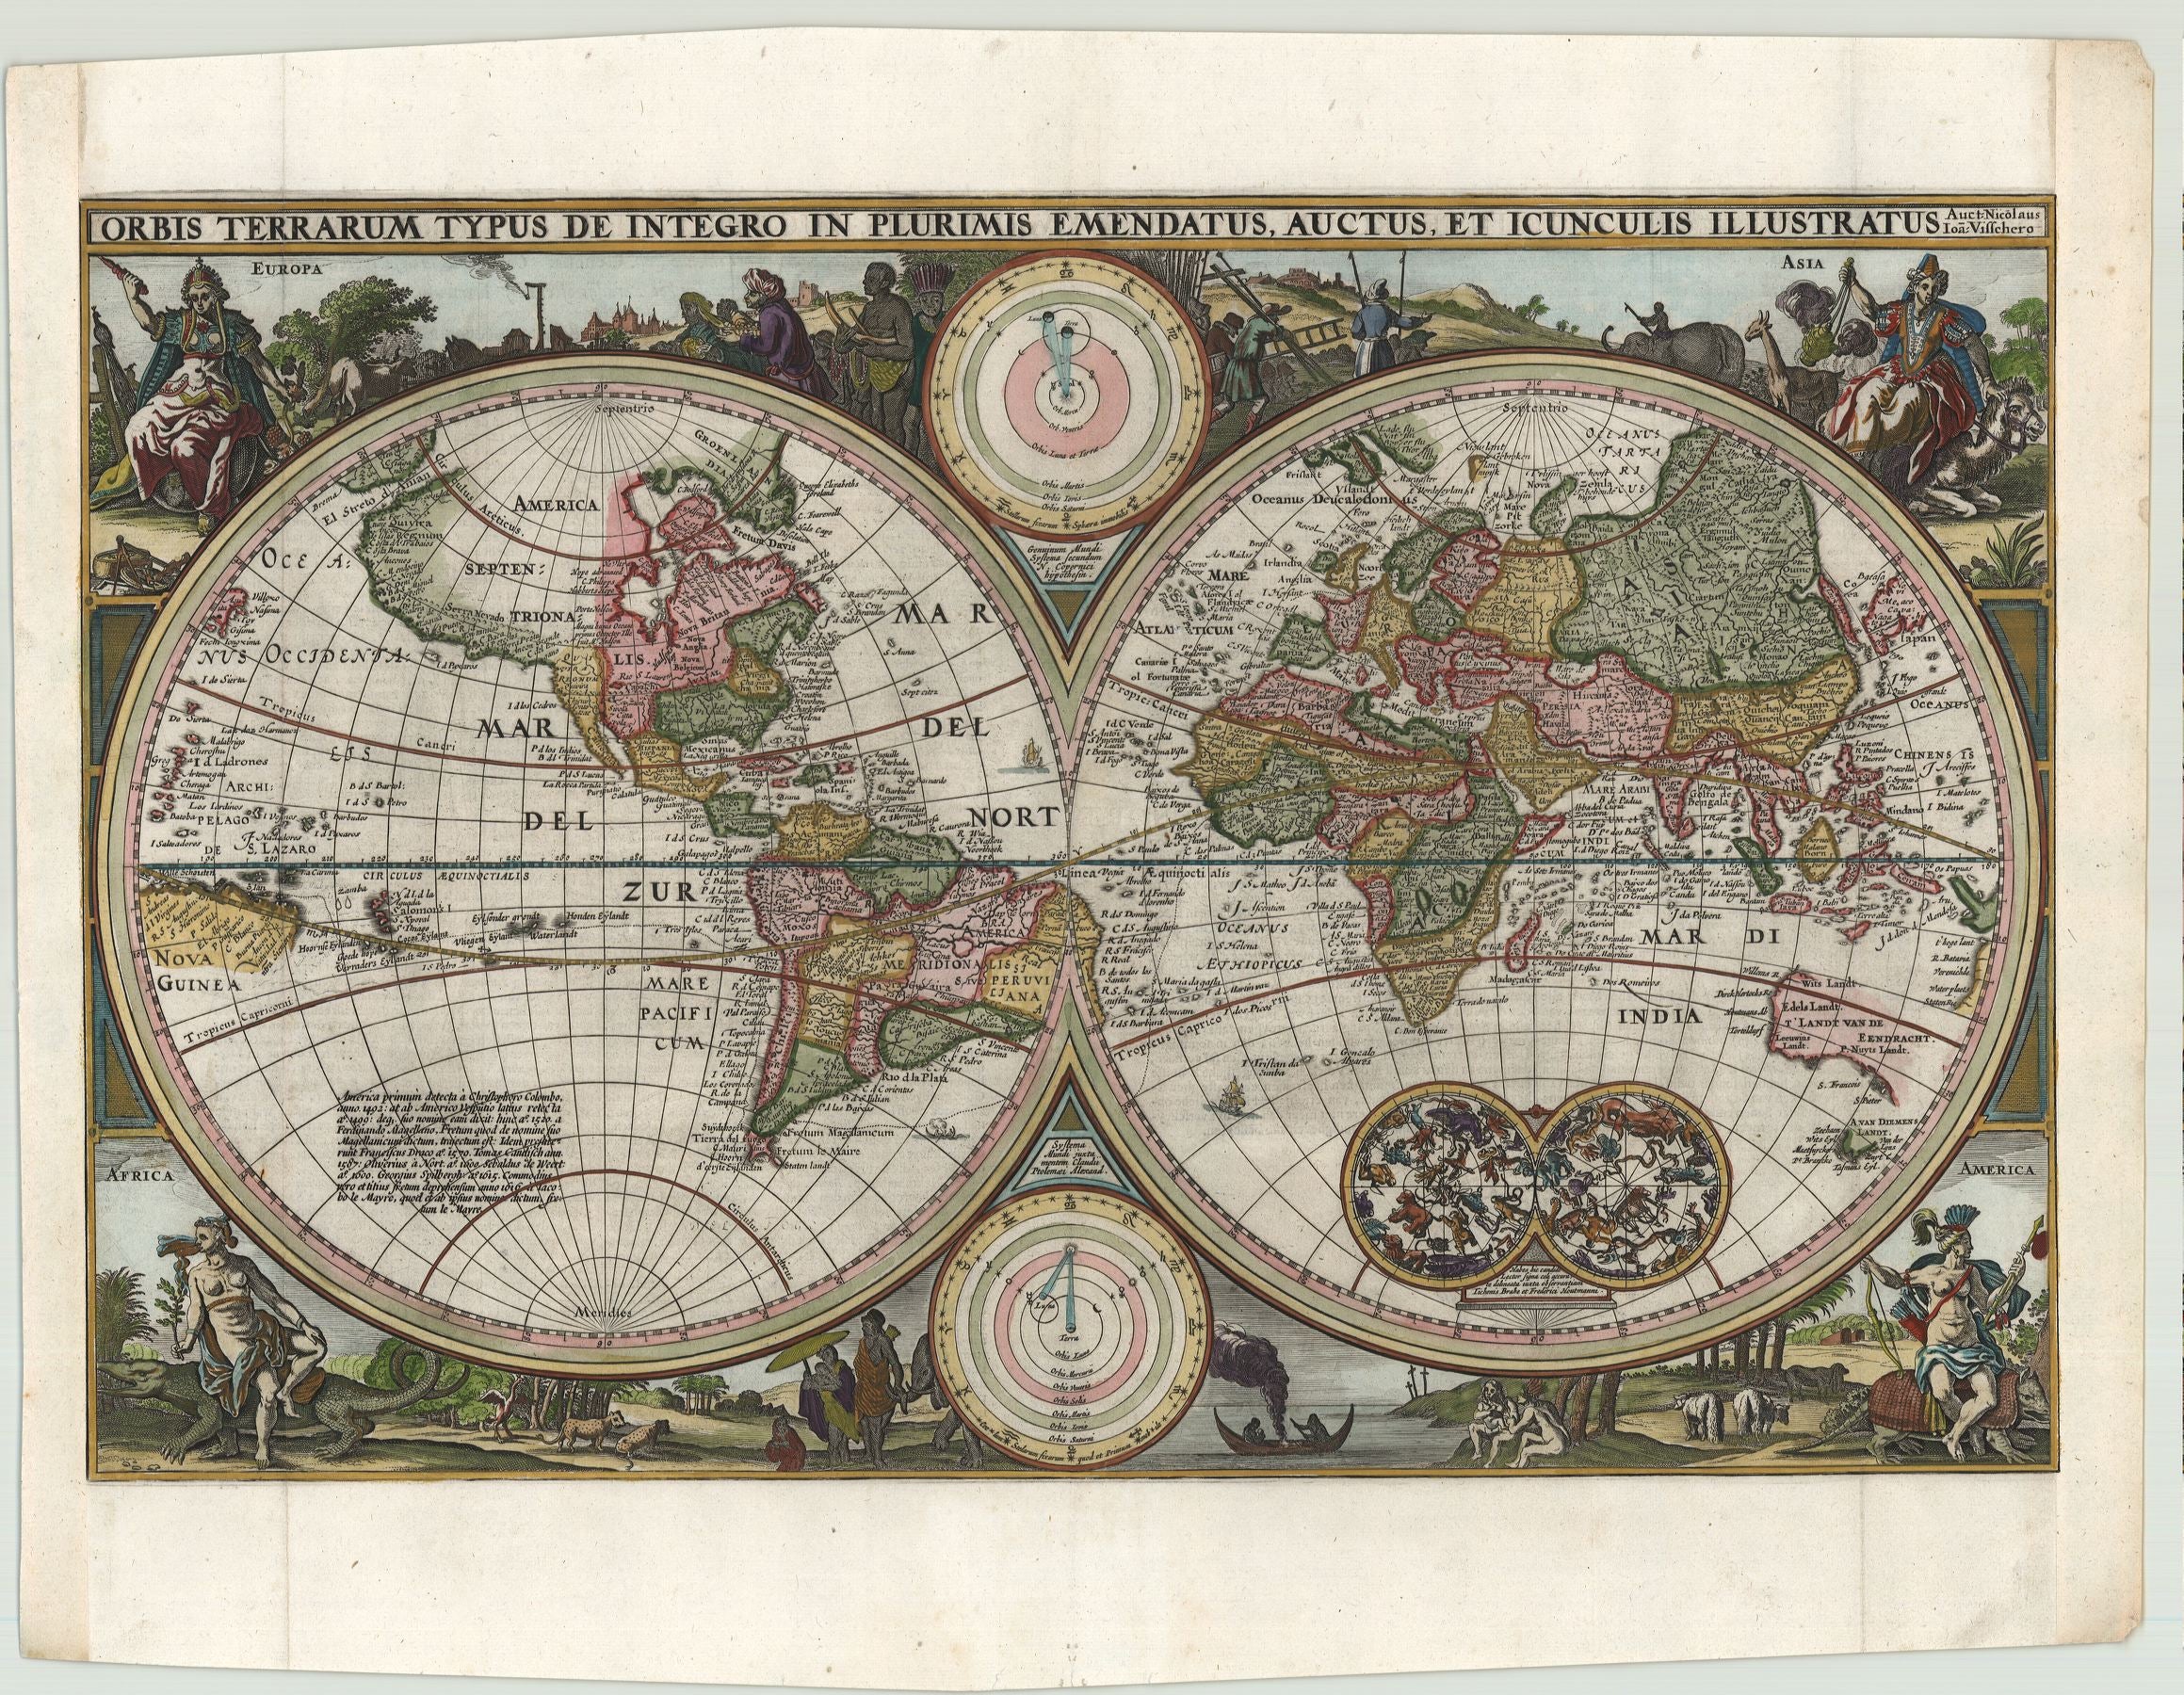 Hervorragend dekorierte Weltkarte um das Jahr 1657 von Nicolas Visscher